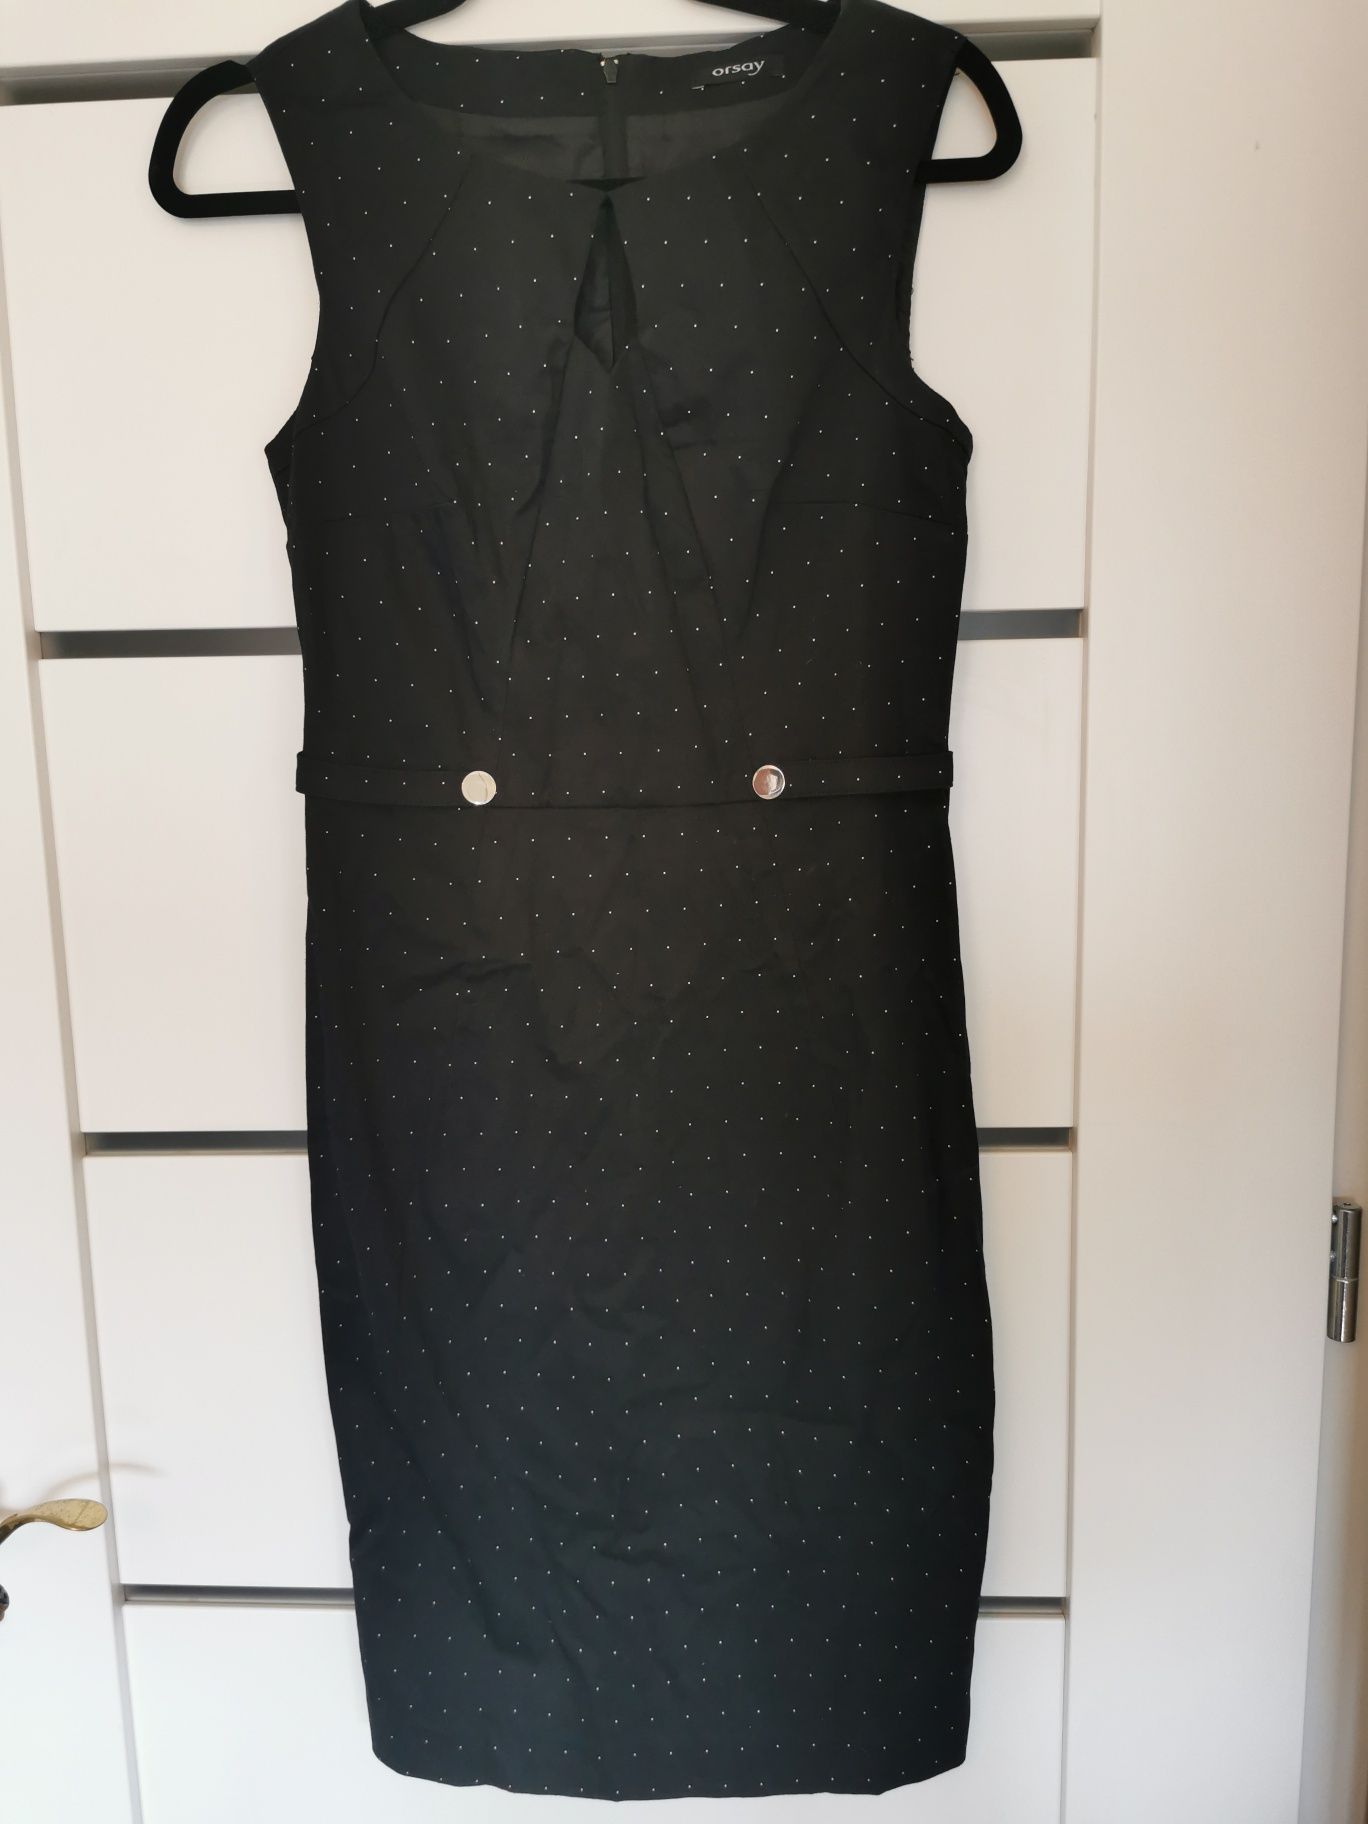 Sukienka Orsay, czarna w kropki rozmiar 36/S